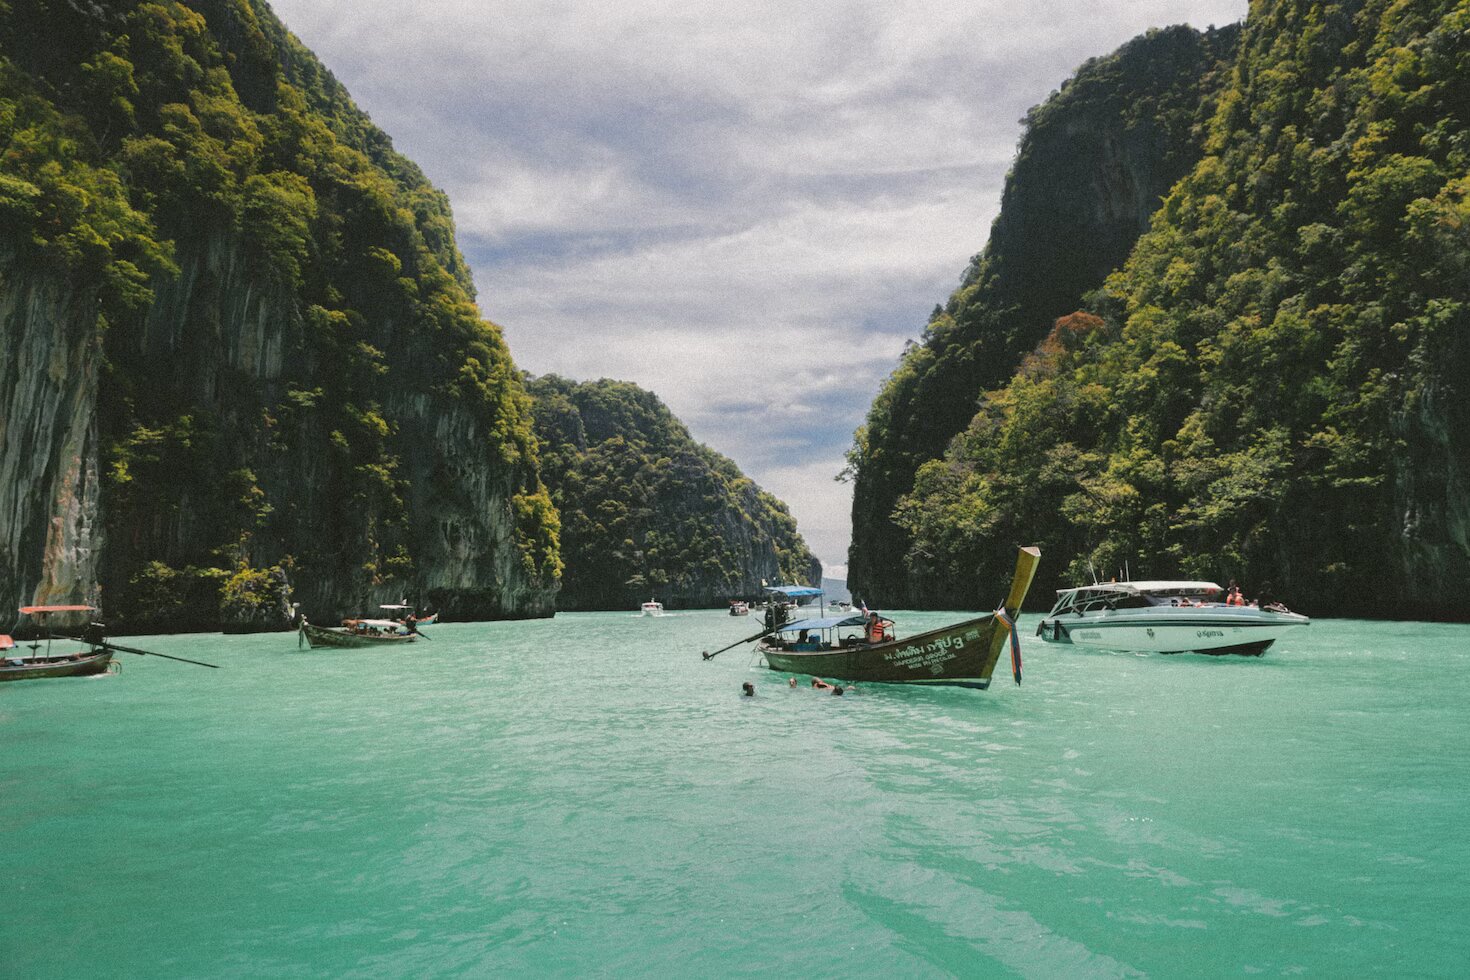 Трагедия в отпуске. В Таиланде утонул турист после ссоры с семьей